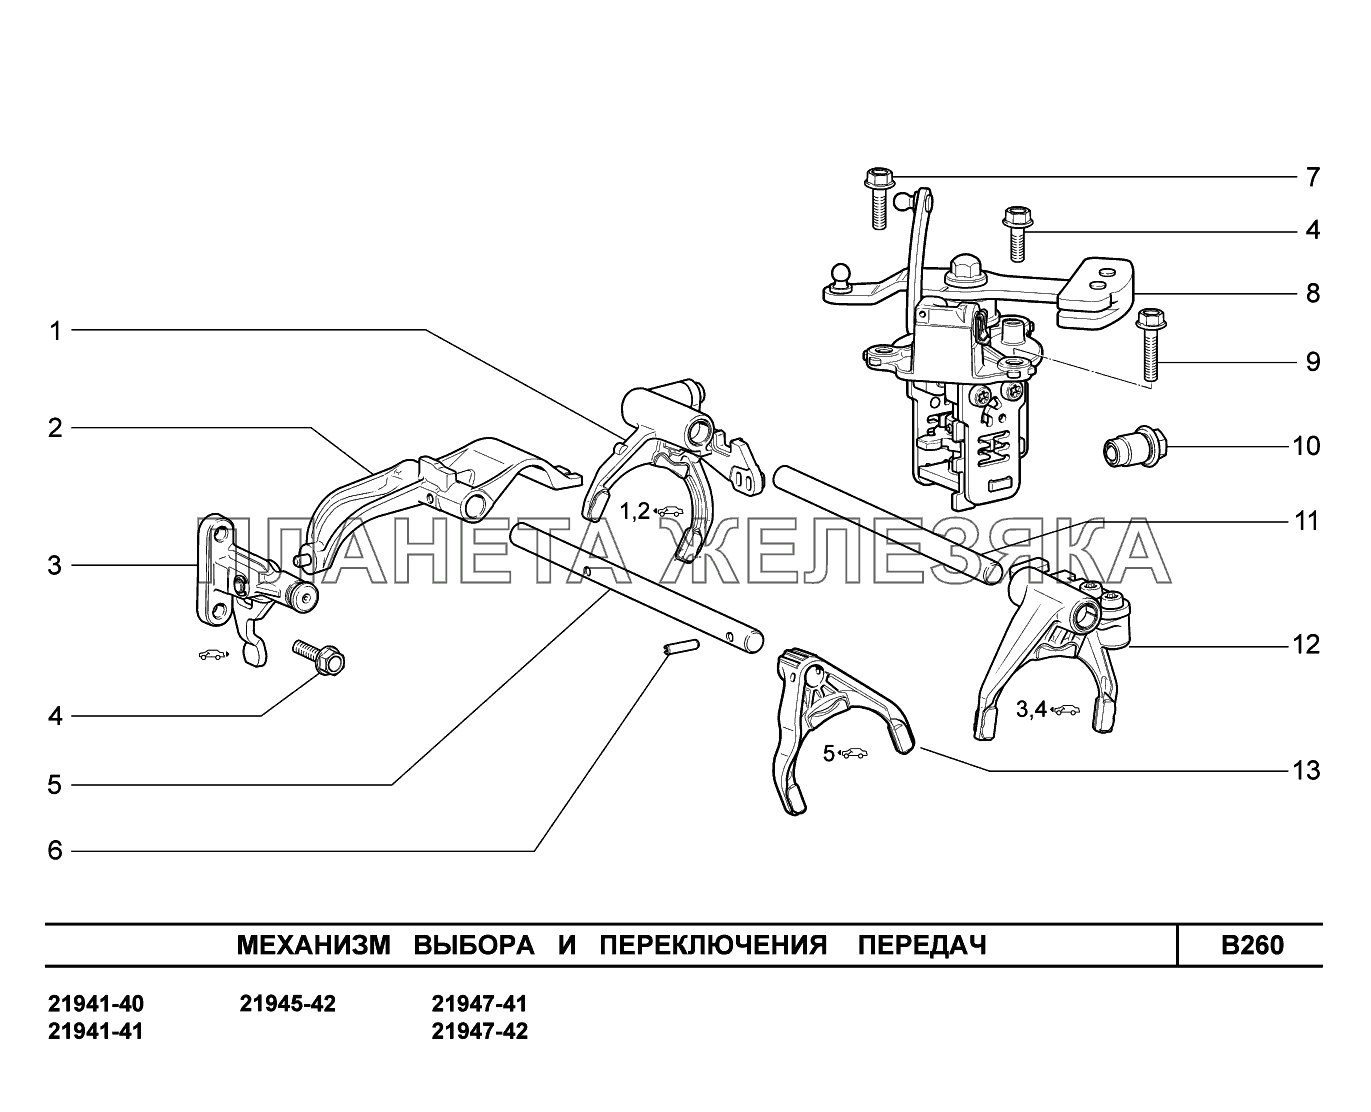 B260. Механизм выбора и переключения передач Lada Kalina New 2194